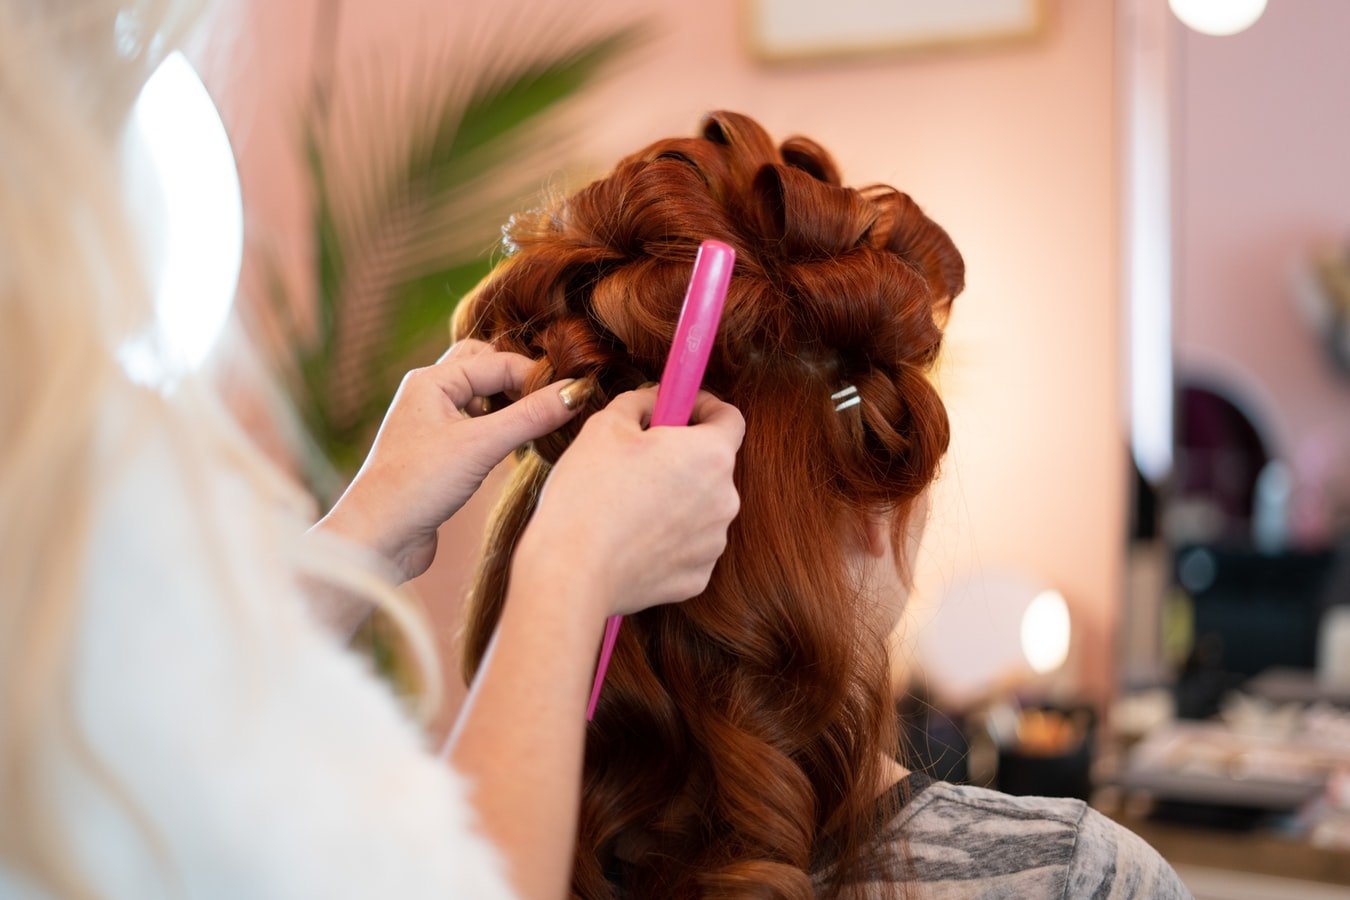 Le regole per la riapertura di parrucchieri ed estetisti prese nella Conferenza delle Regioni